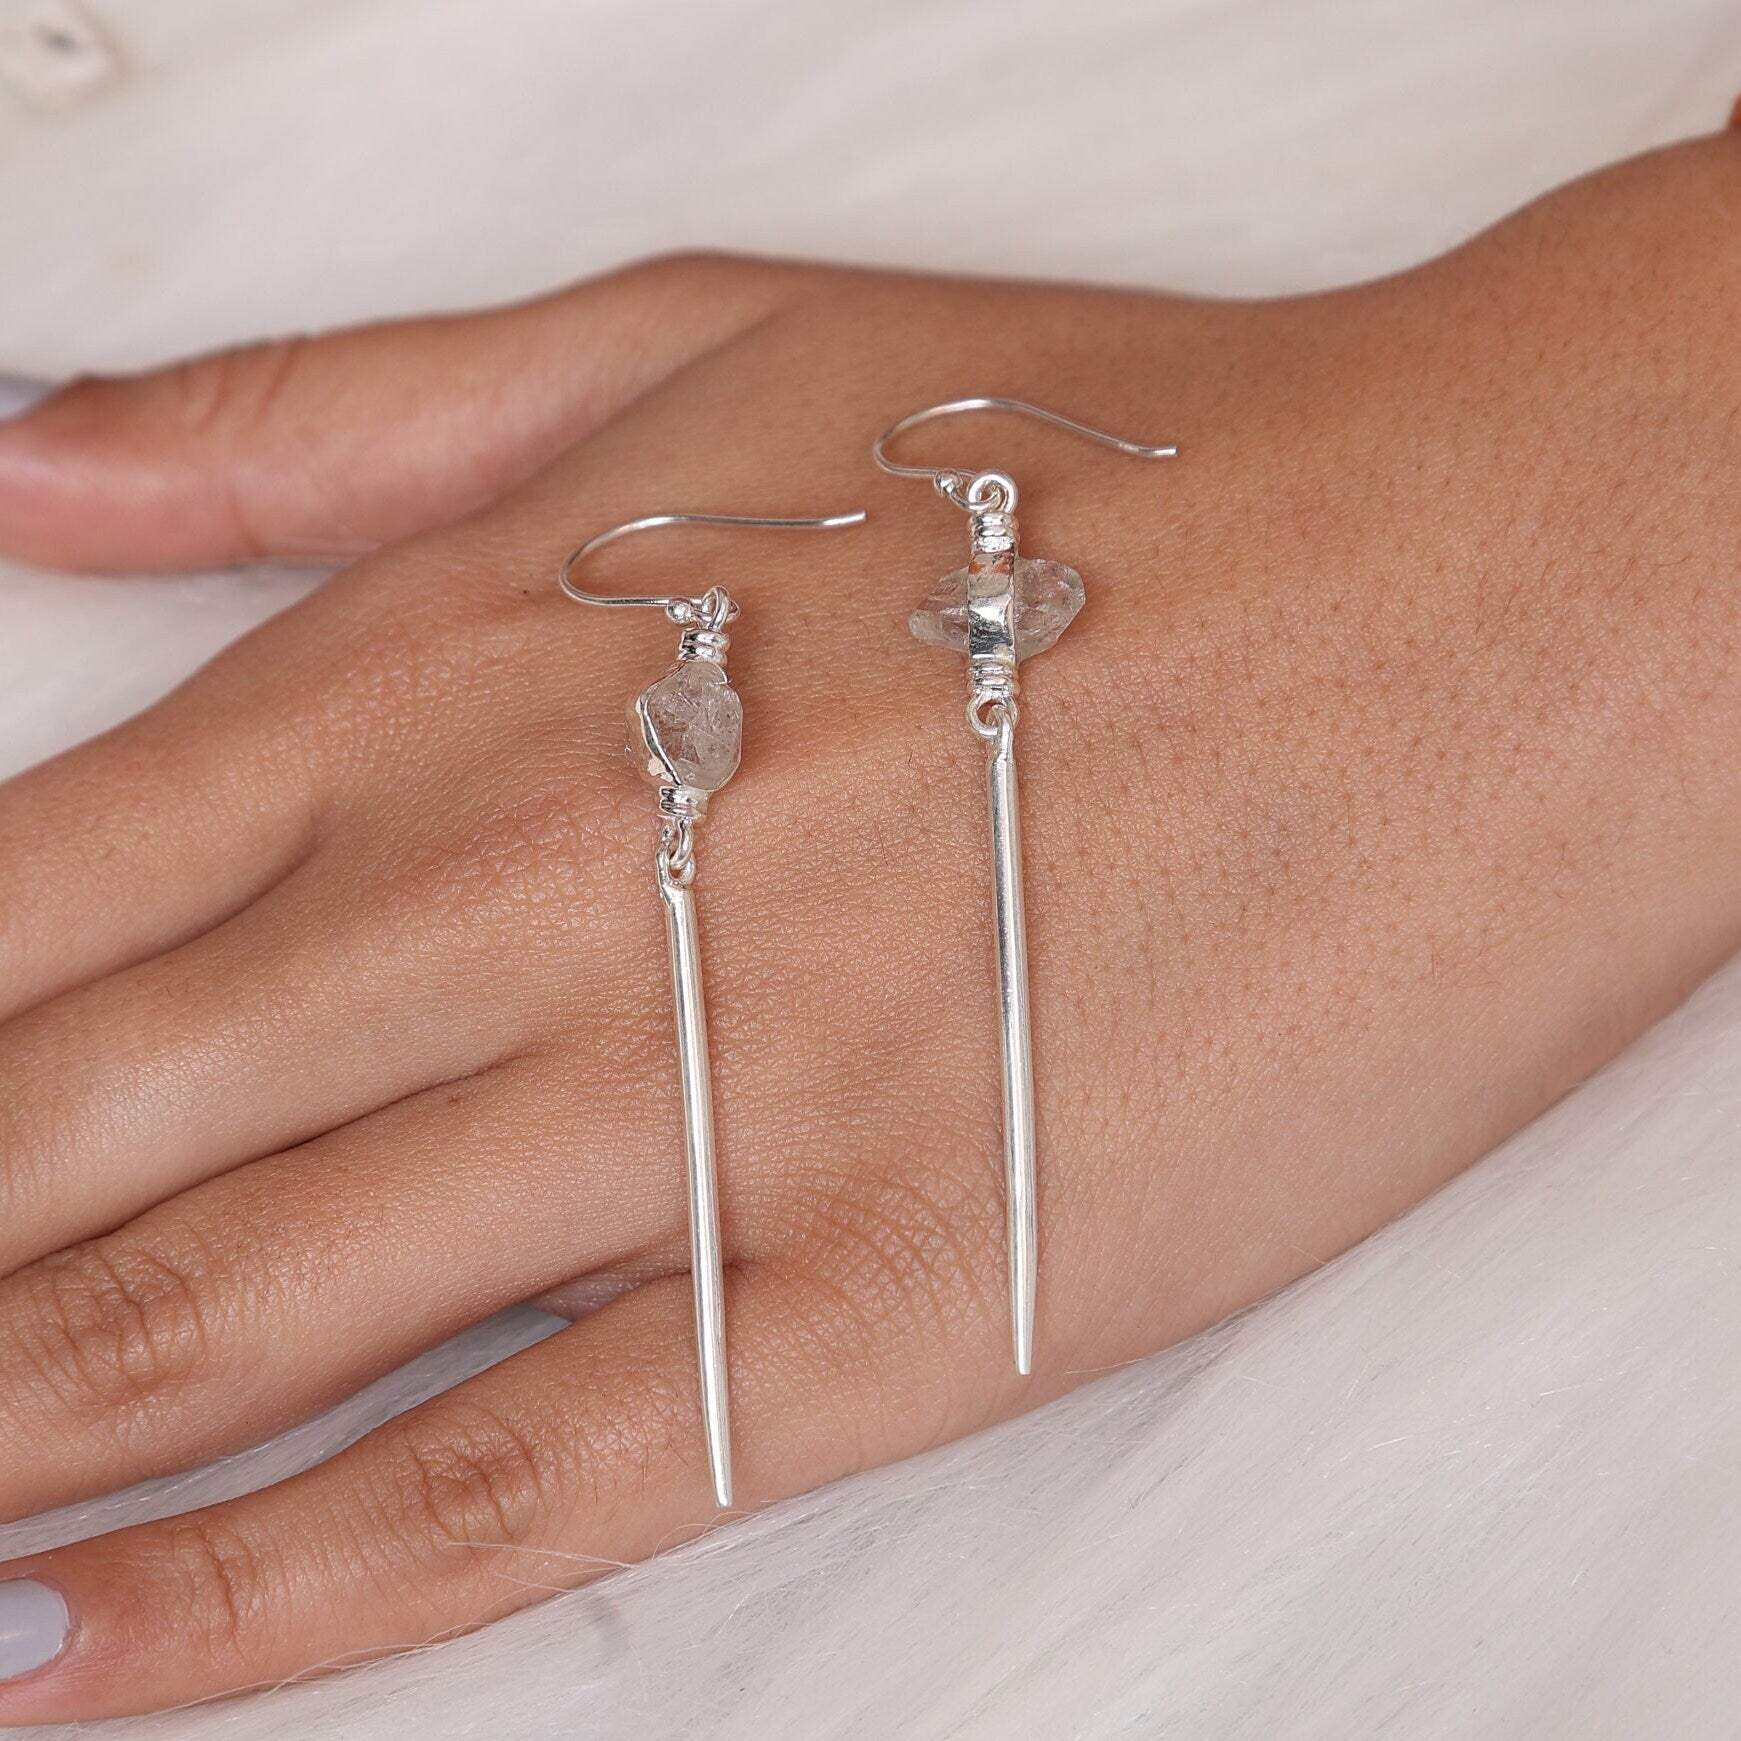 Raw Herkimer Diamond Earrings, 925 Sterling Silver Earrings, Large Silver Earrings, Herkimer Gemstone Earrings, Handmade Jewelry Earrings